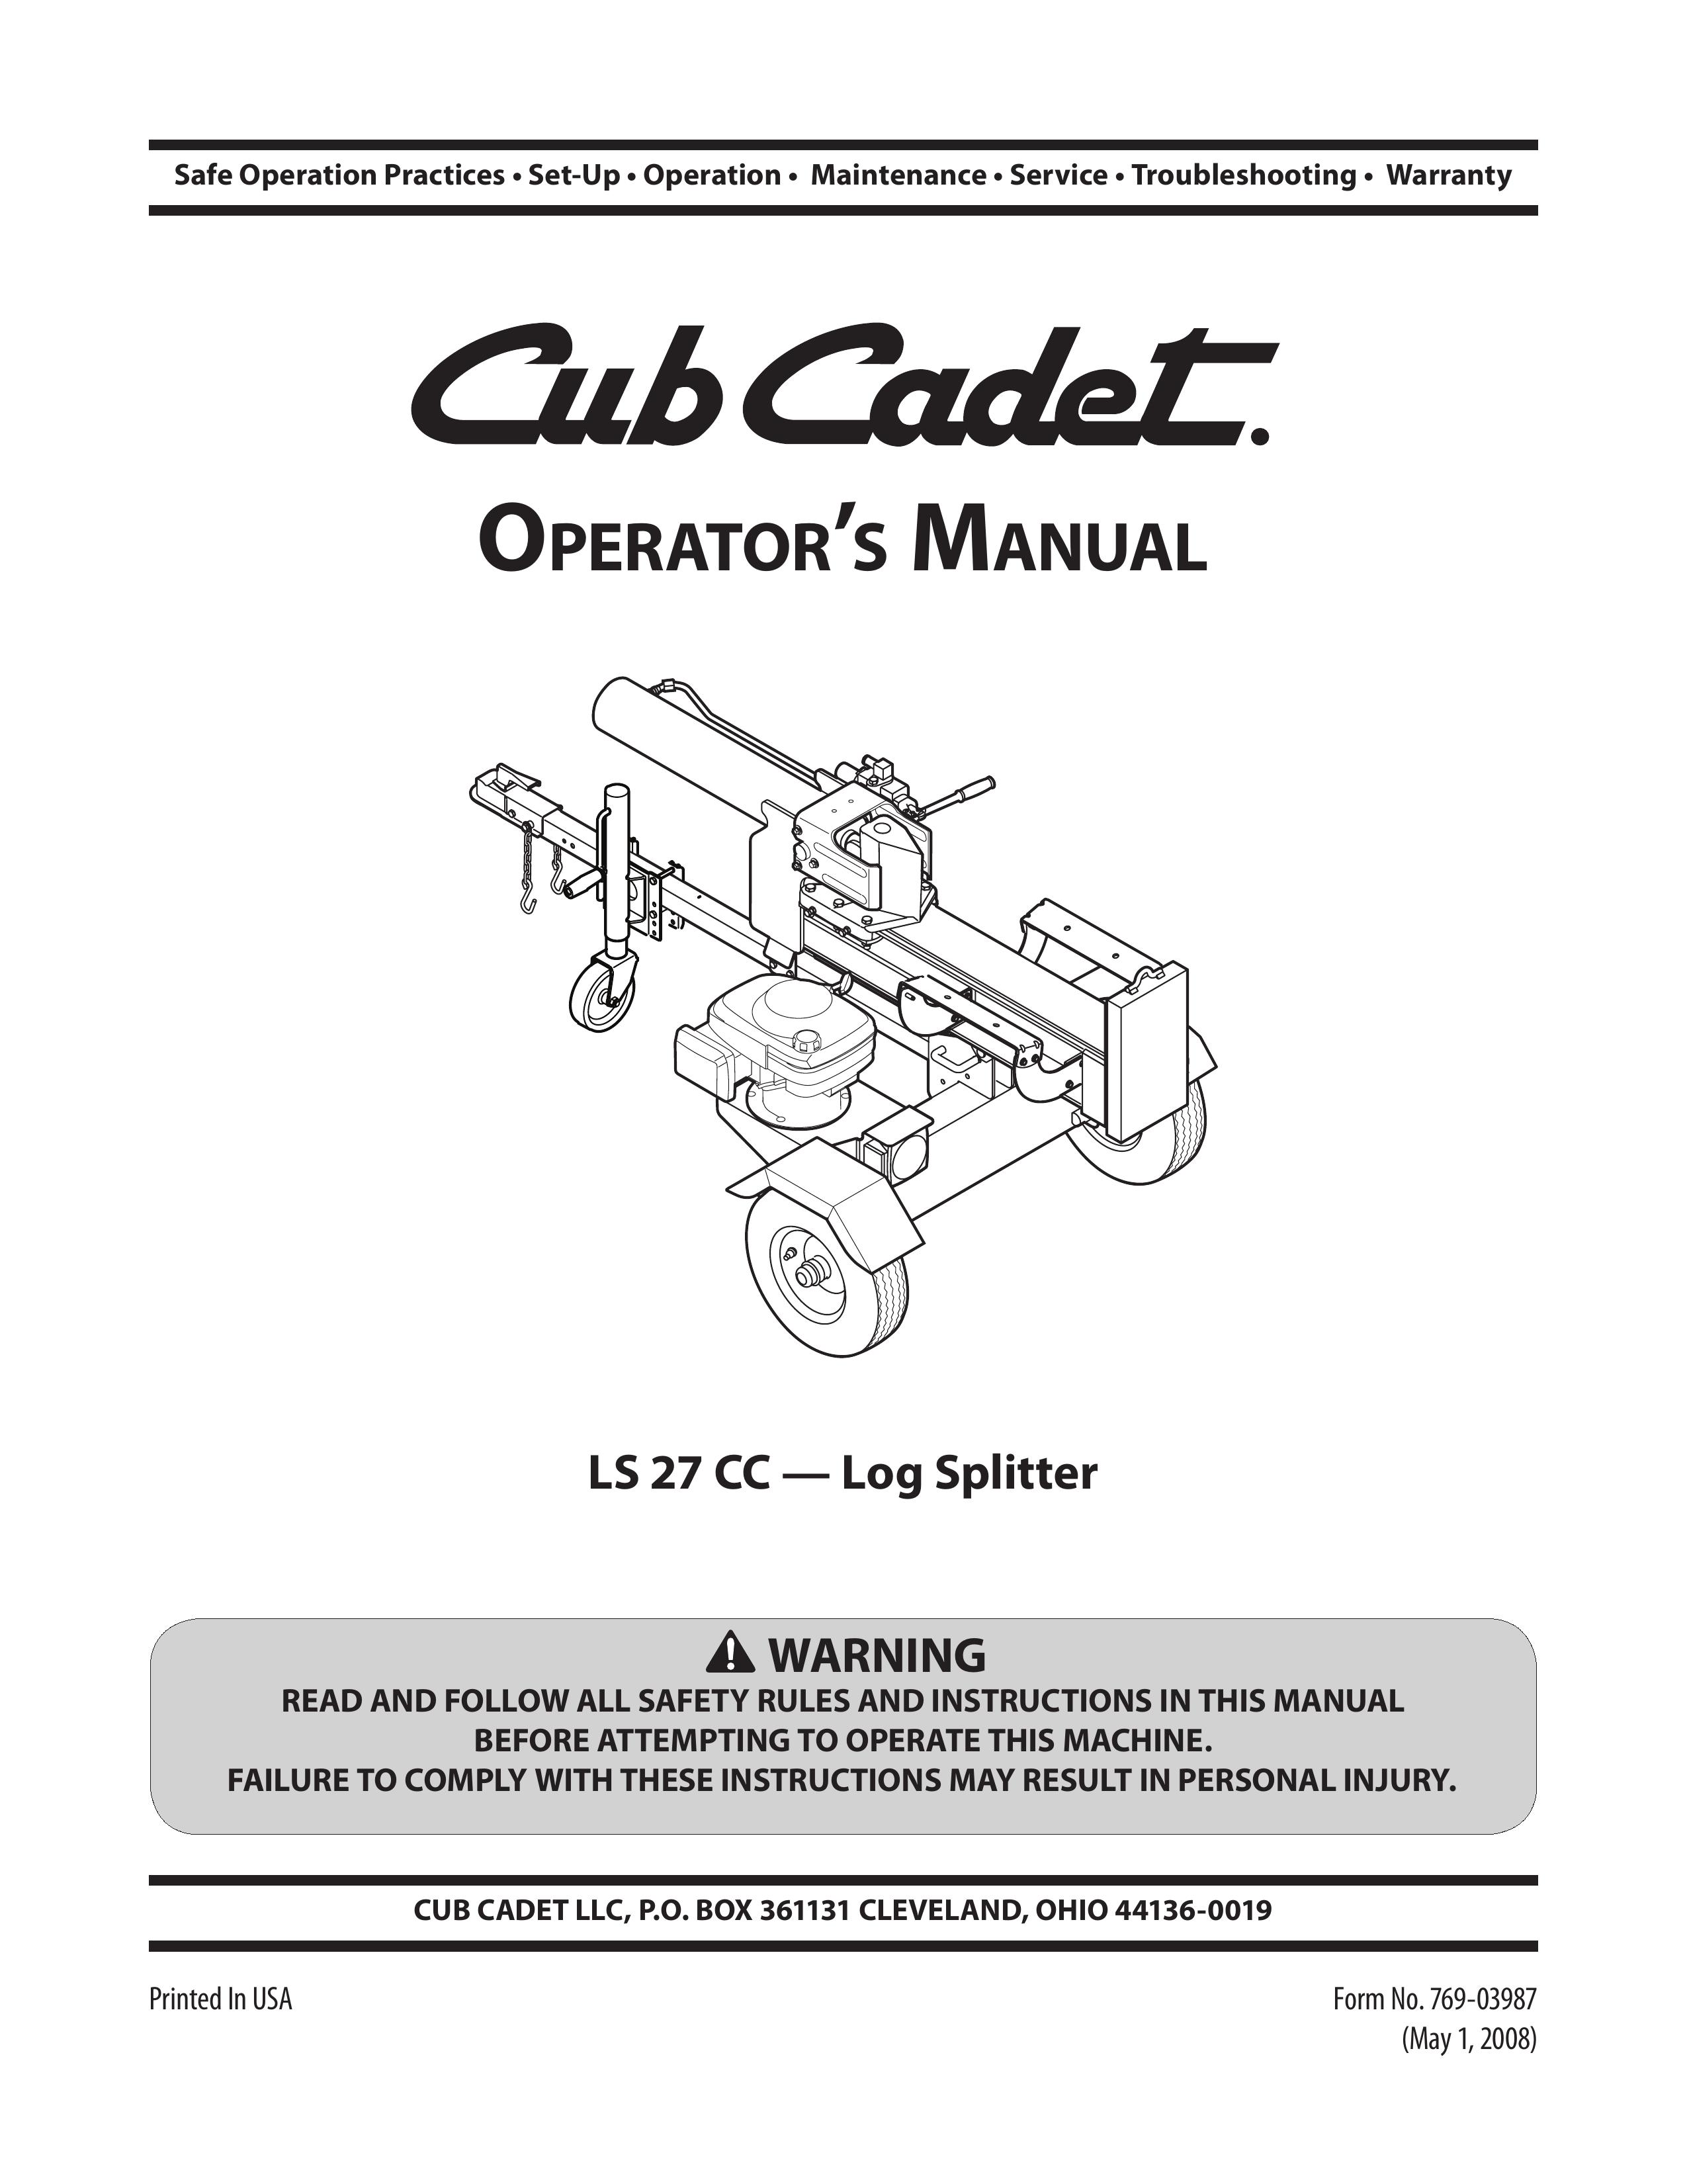 Cub Cadet l5 27 cc Log Splitter User Manual